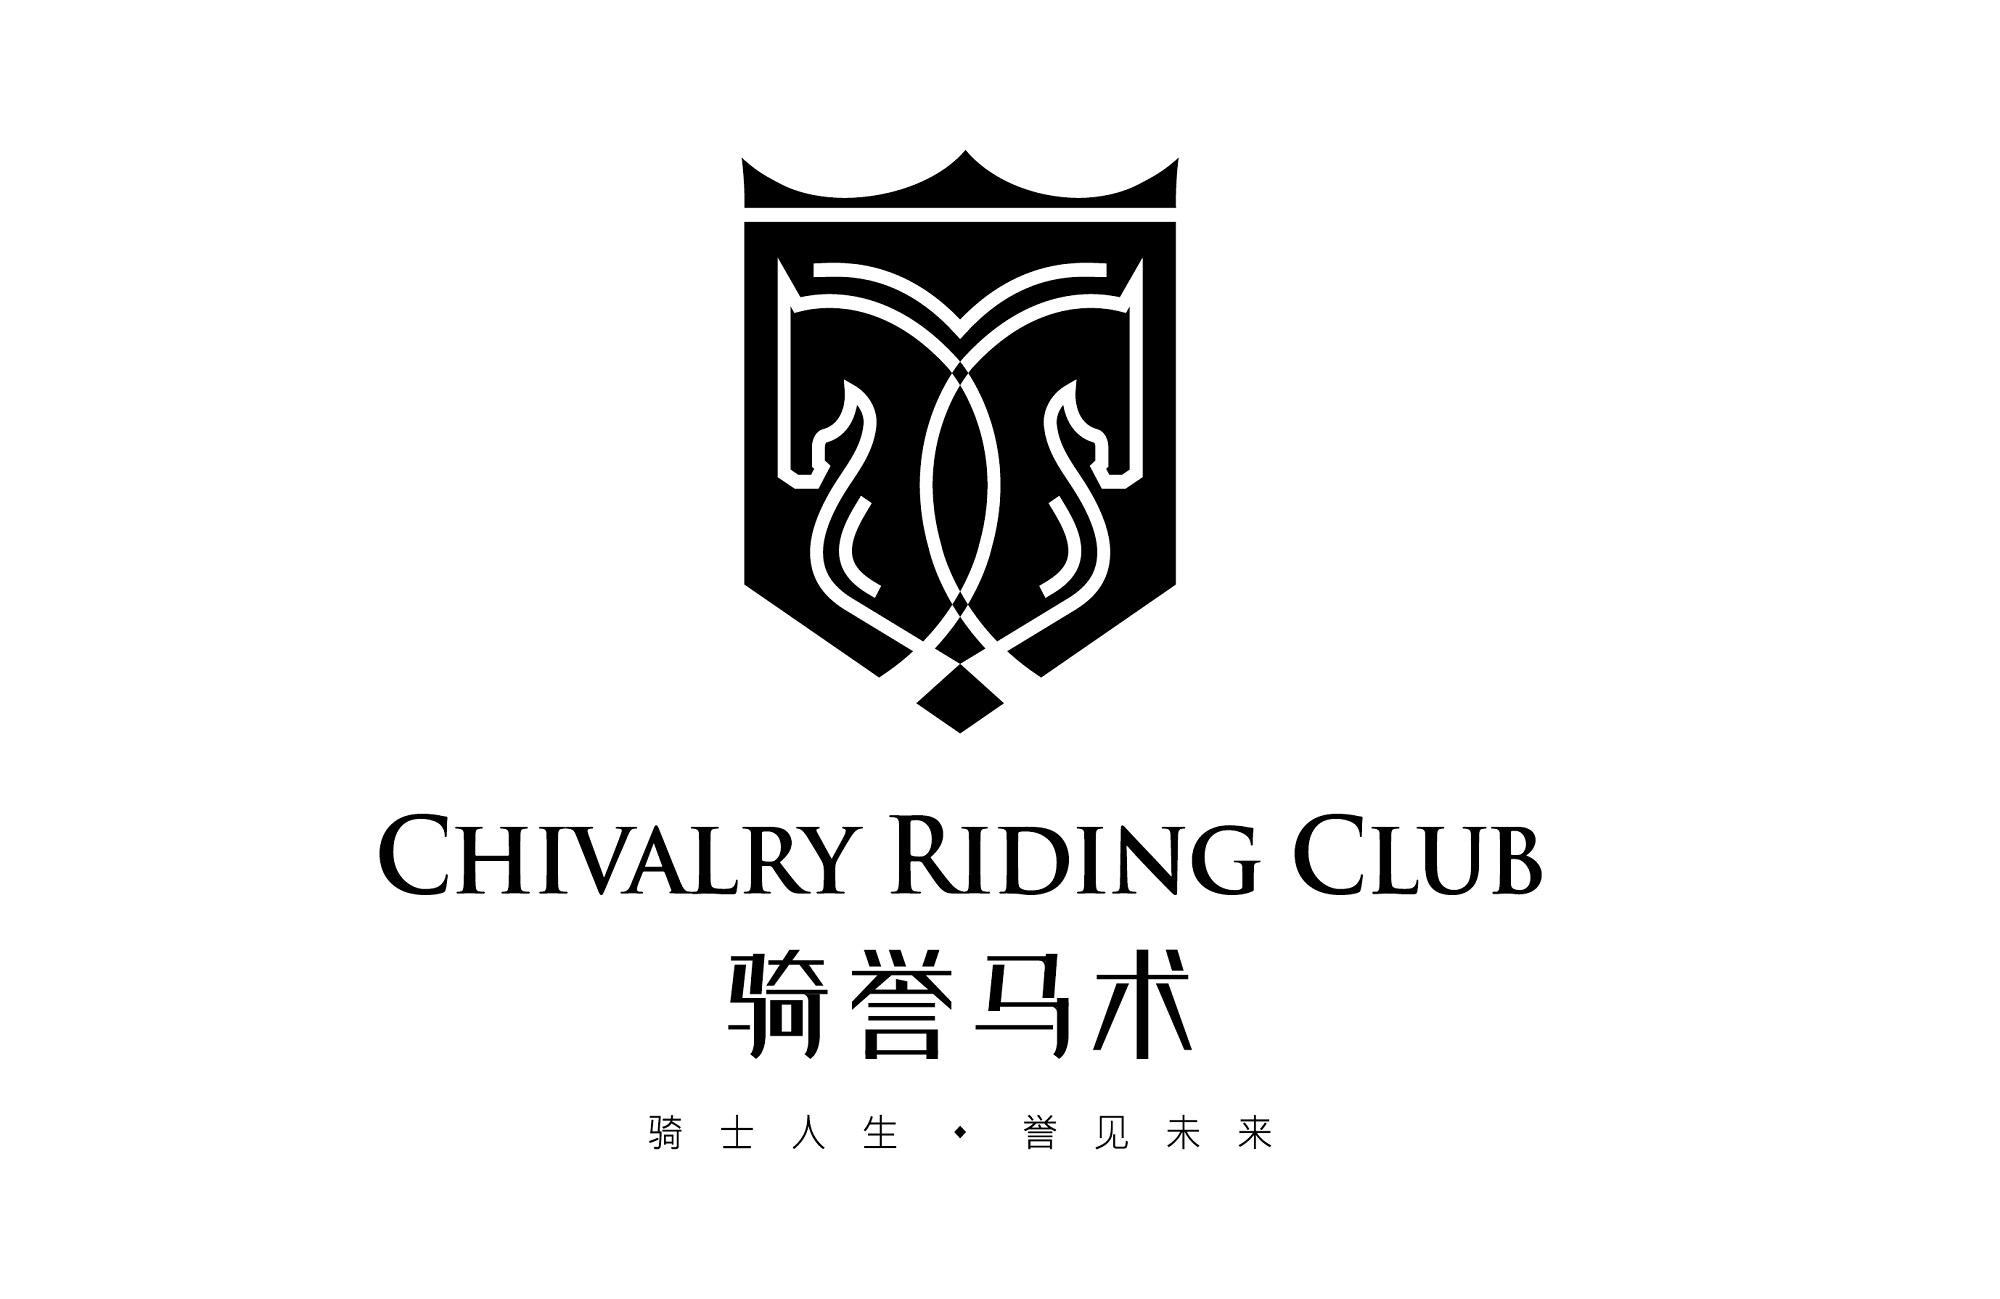 骑誉马术 骑士人生·誉见未来 chivalry riding club商标公告